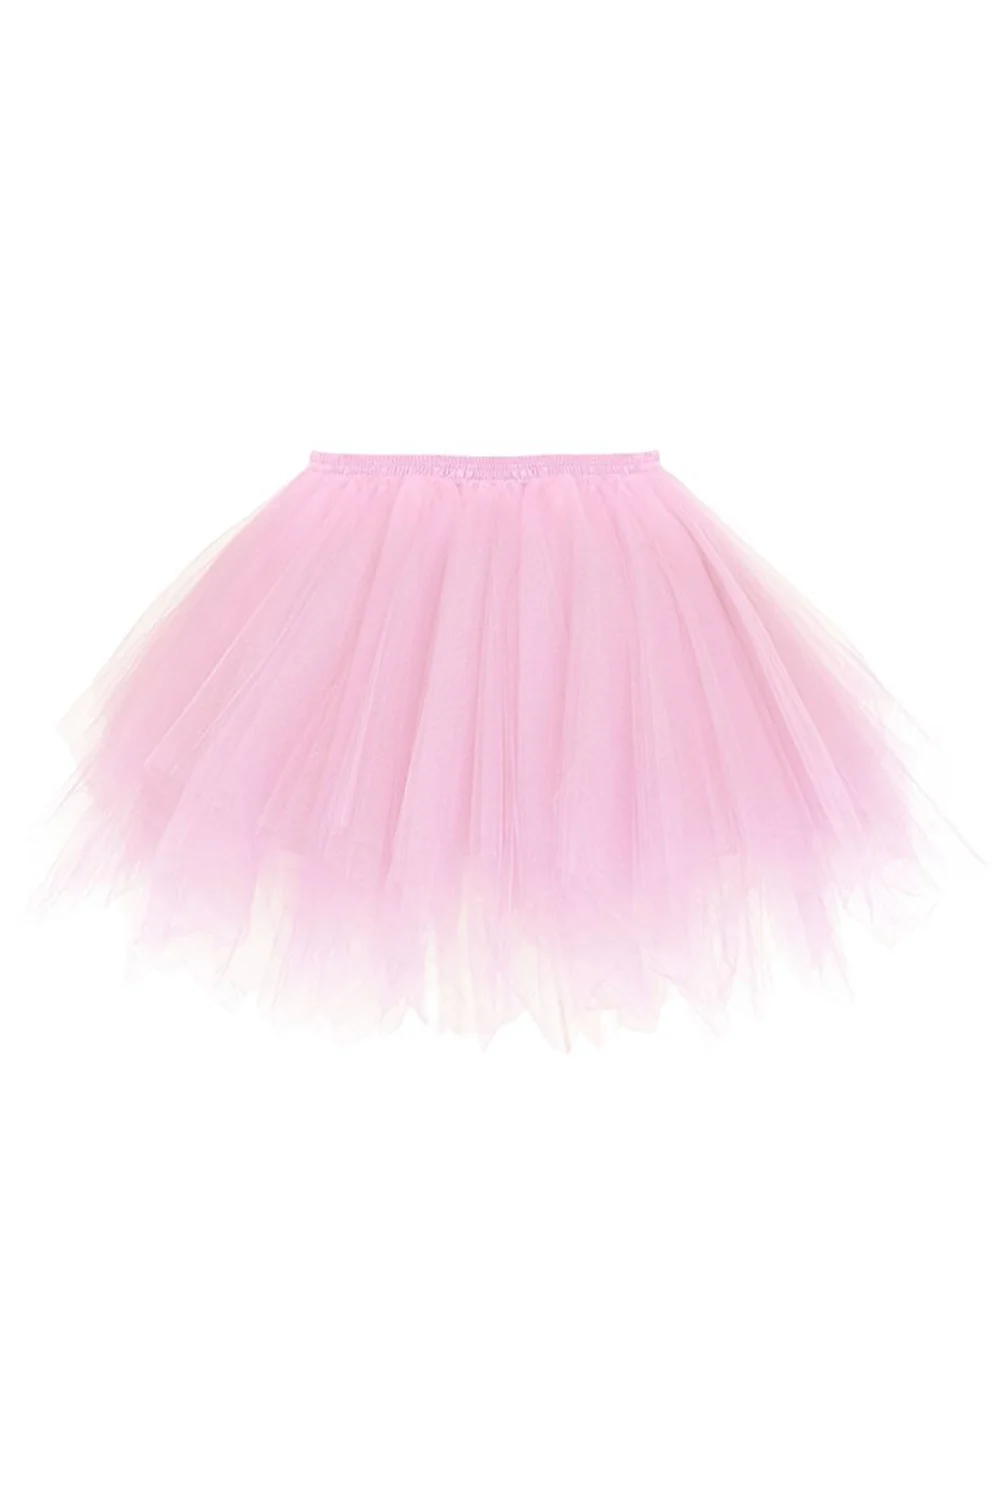 Женские короткие тюль для нижней юбки балетная пачка танцевальная Нижняя юбка для взрослых Нижняя юбка принцессы сетчатая Нижняя юбка рокабилли - Цвет: Розовый